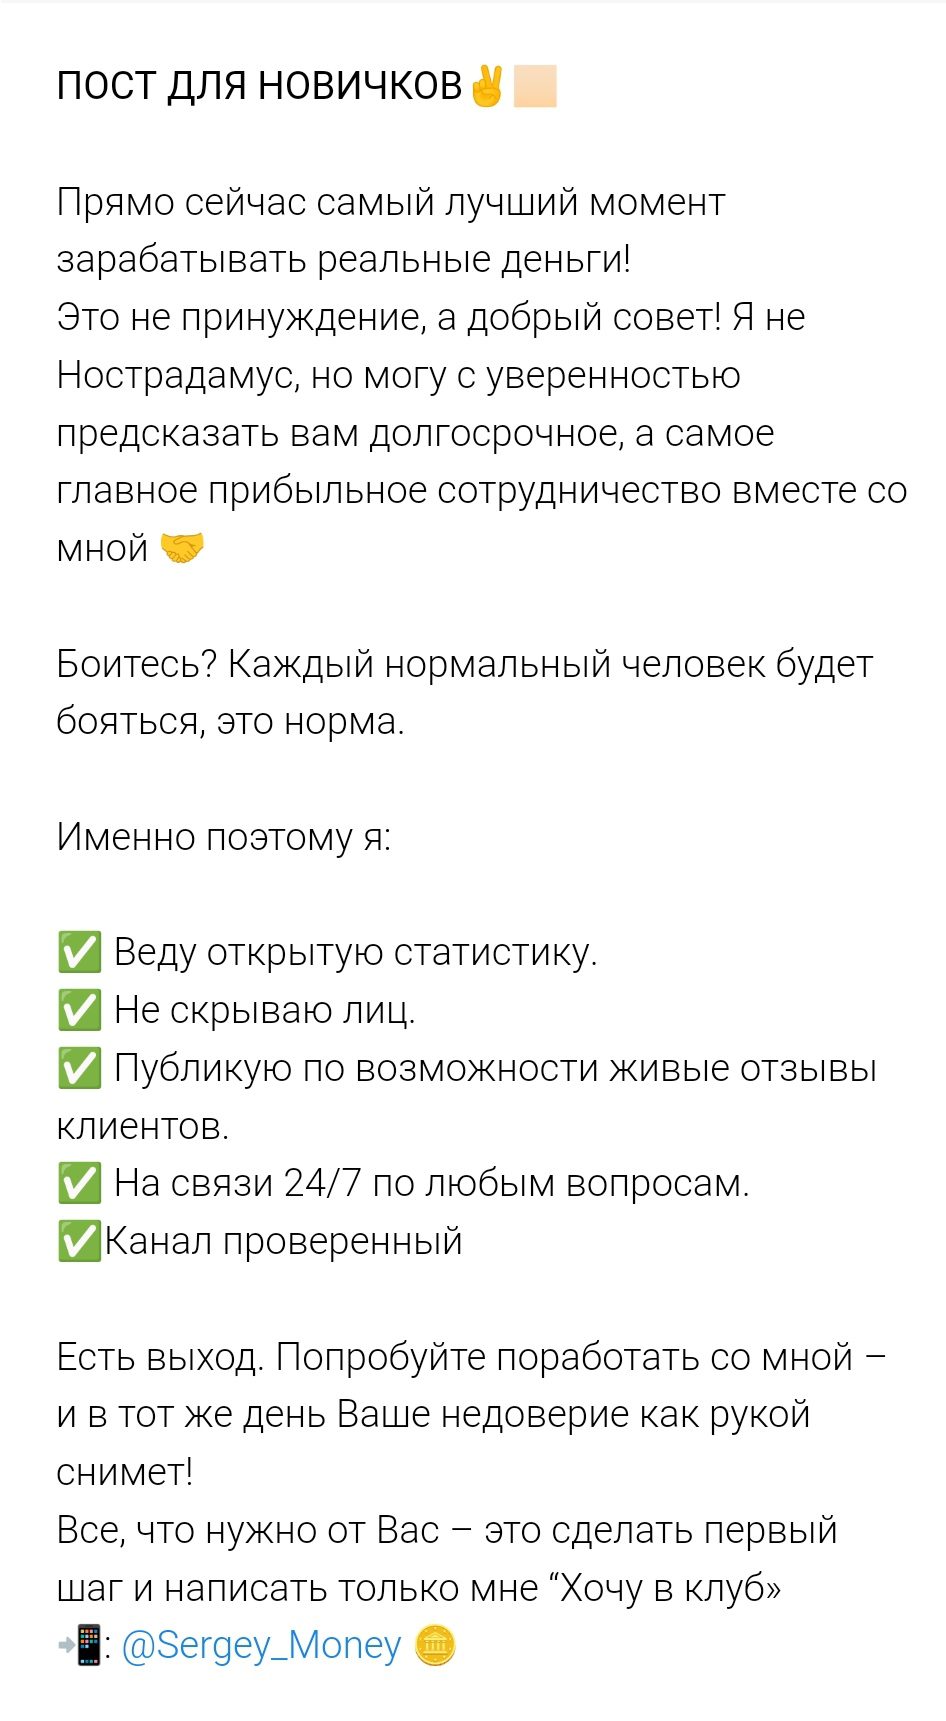 Гарантии выплат от Sergey Team